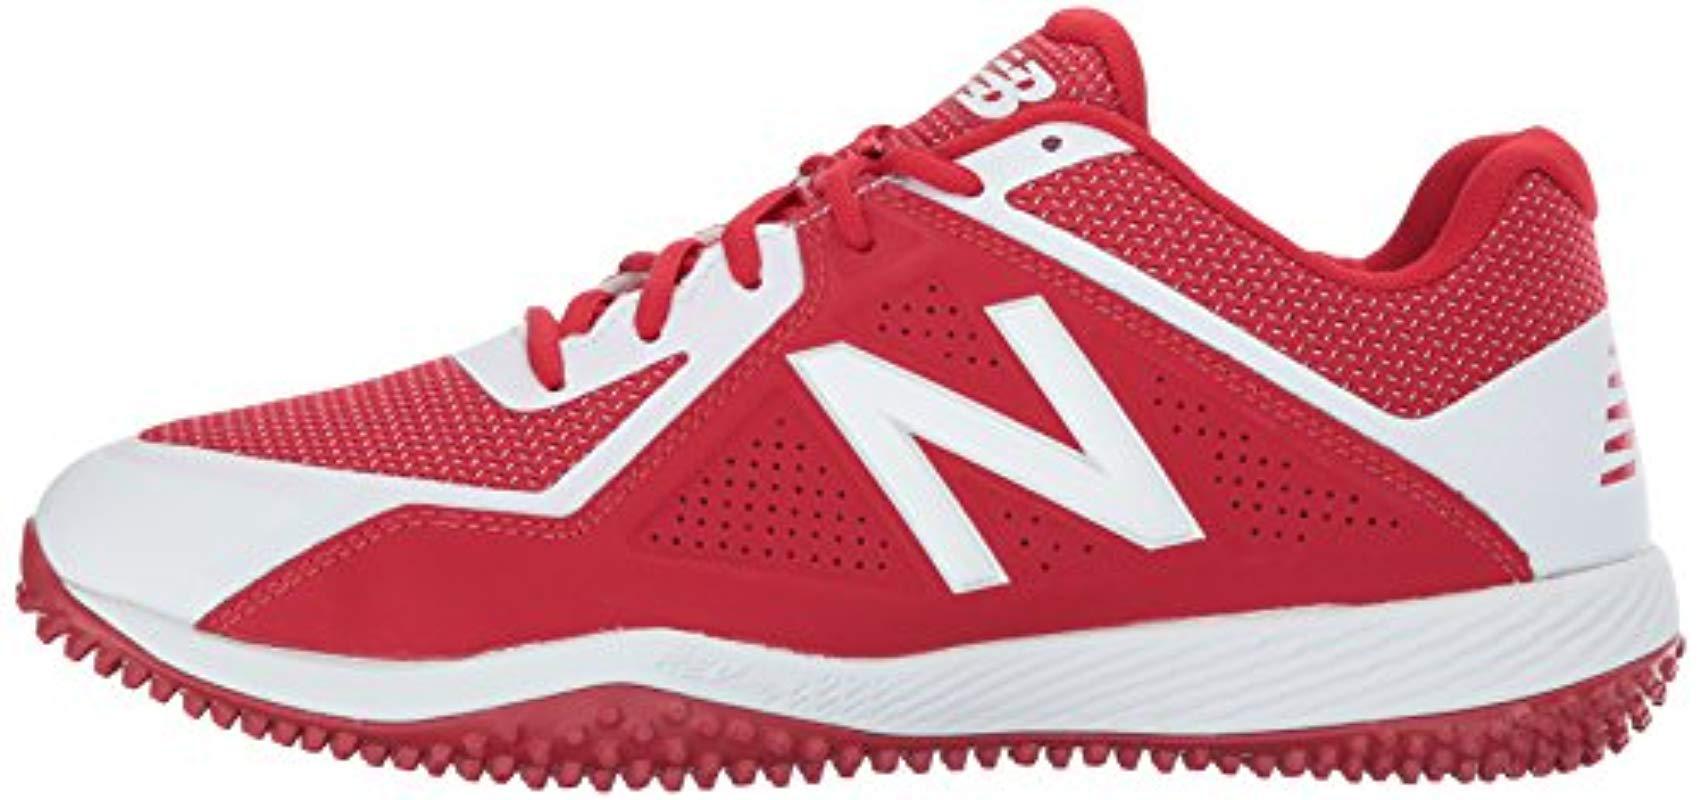 New Balance T4040v4 Turf Baseball Shoe in Red/White (Red) for Men ...